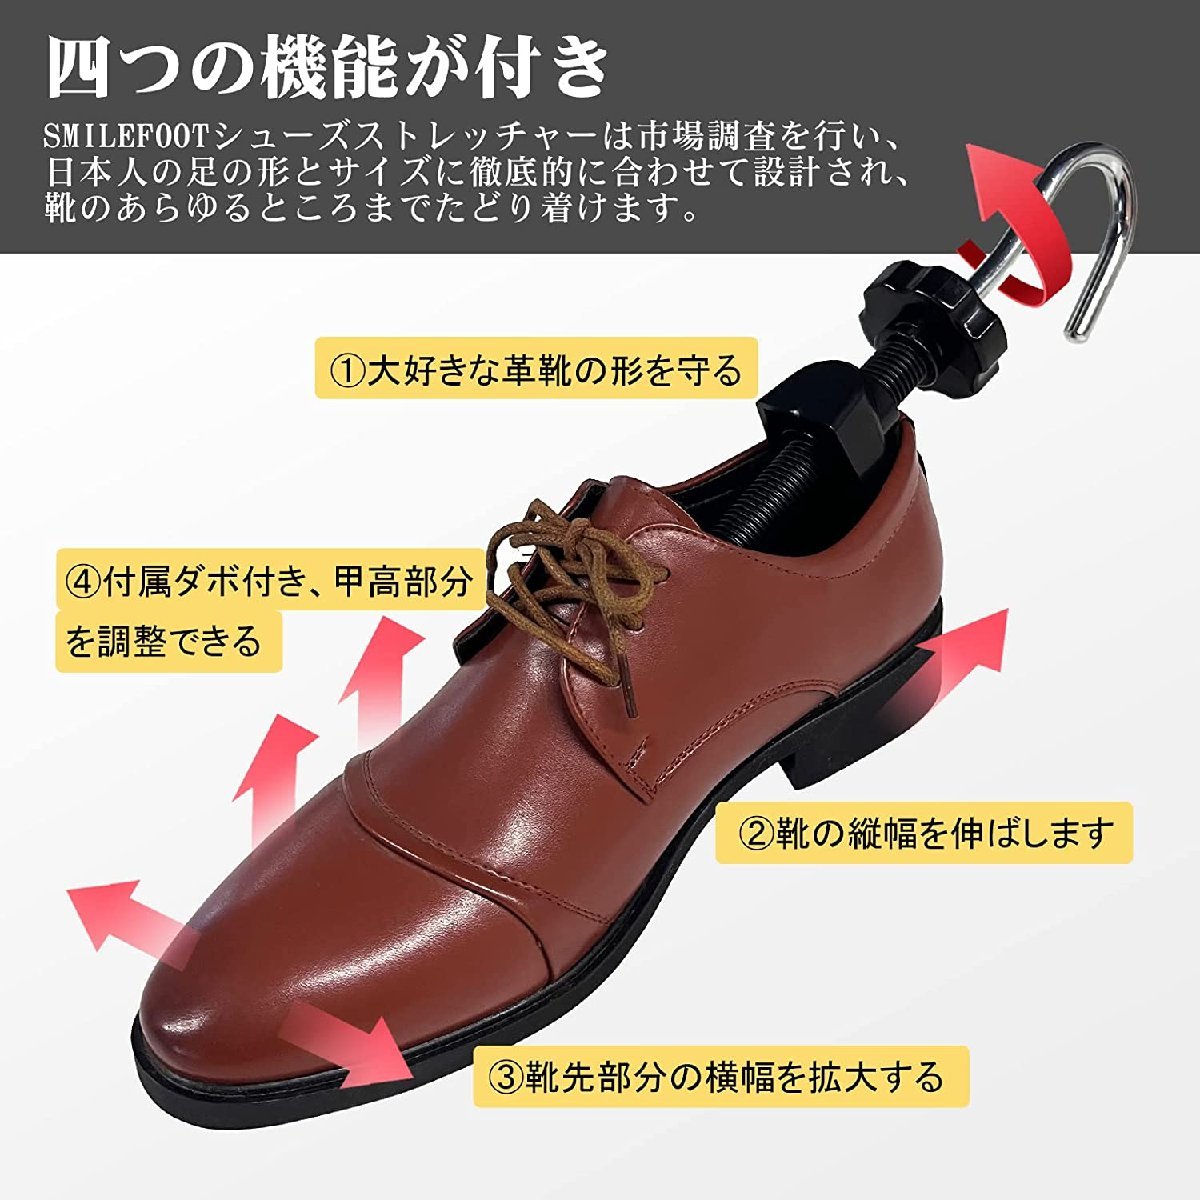 SAMTIAS 2WAYストレッチャー「紳士用」 2台セット 靴伸ばし器 靴のサイズ調整 靴広げる